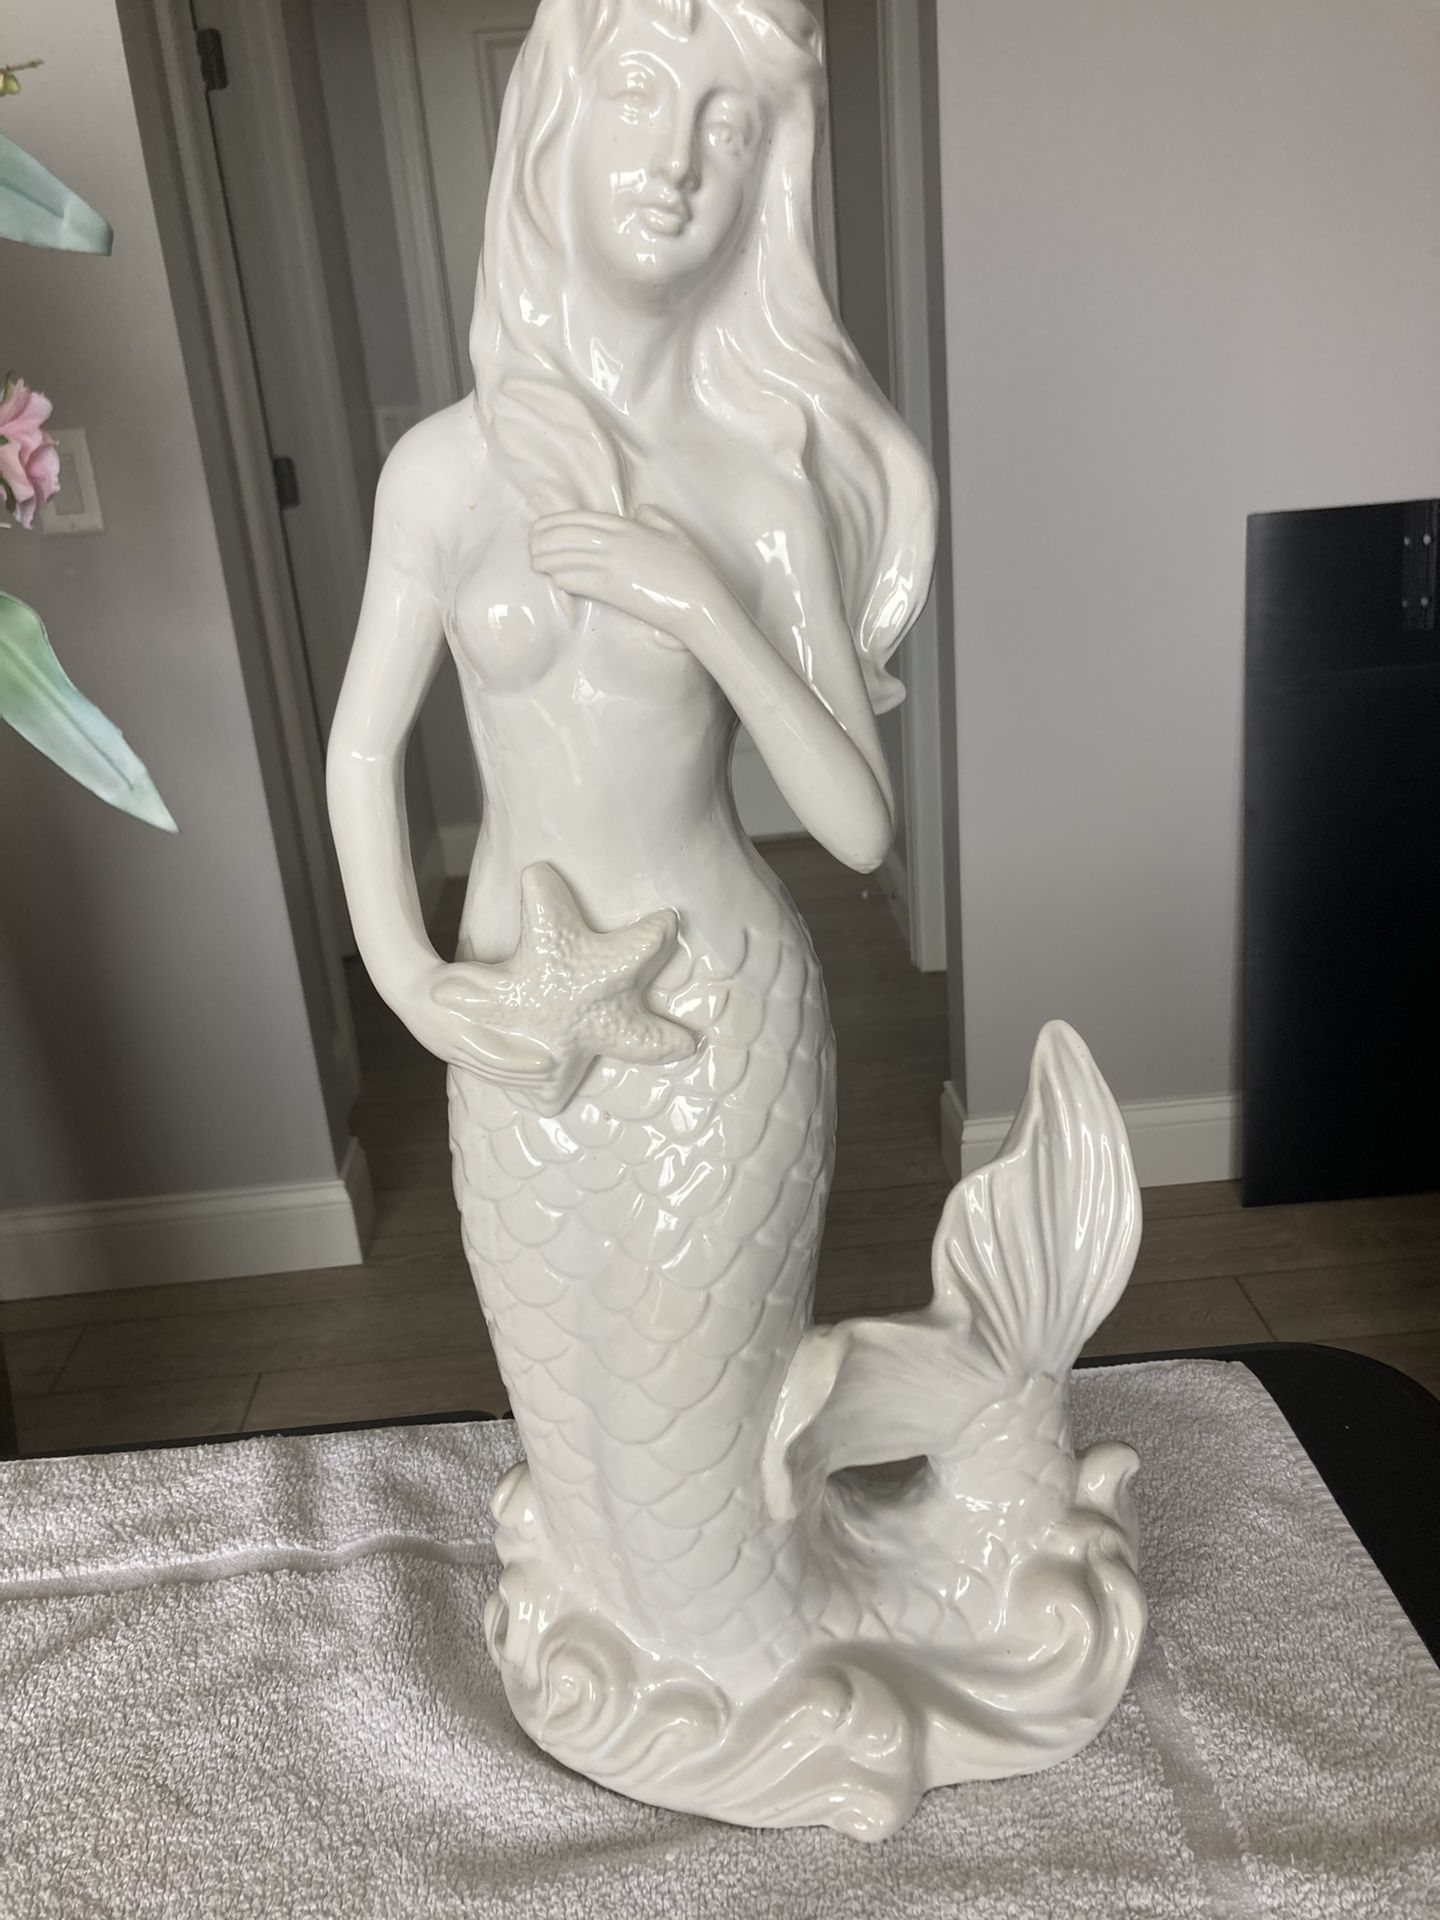 Ceramic Mermaid W/Starfish